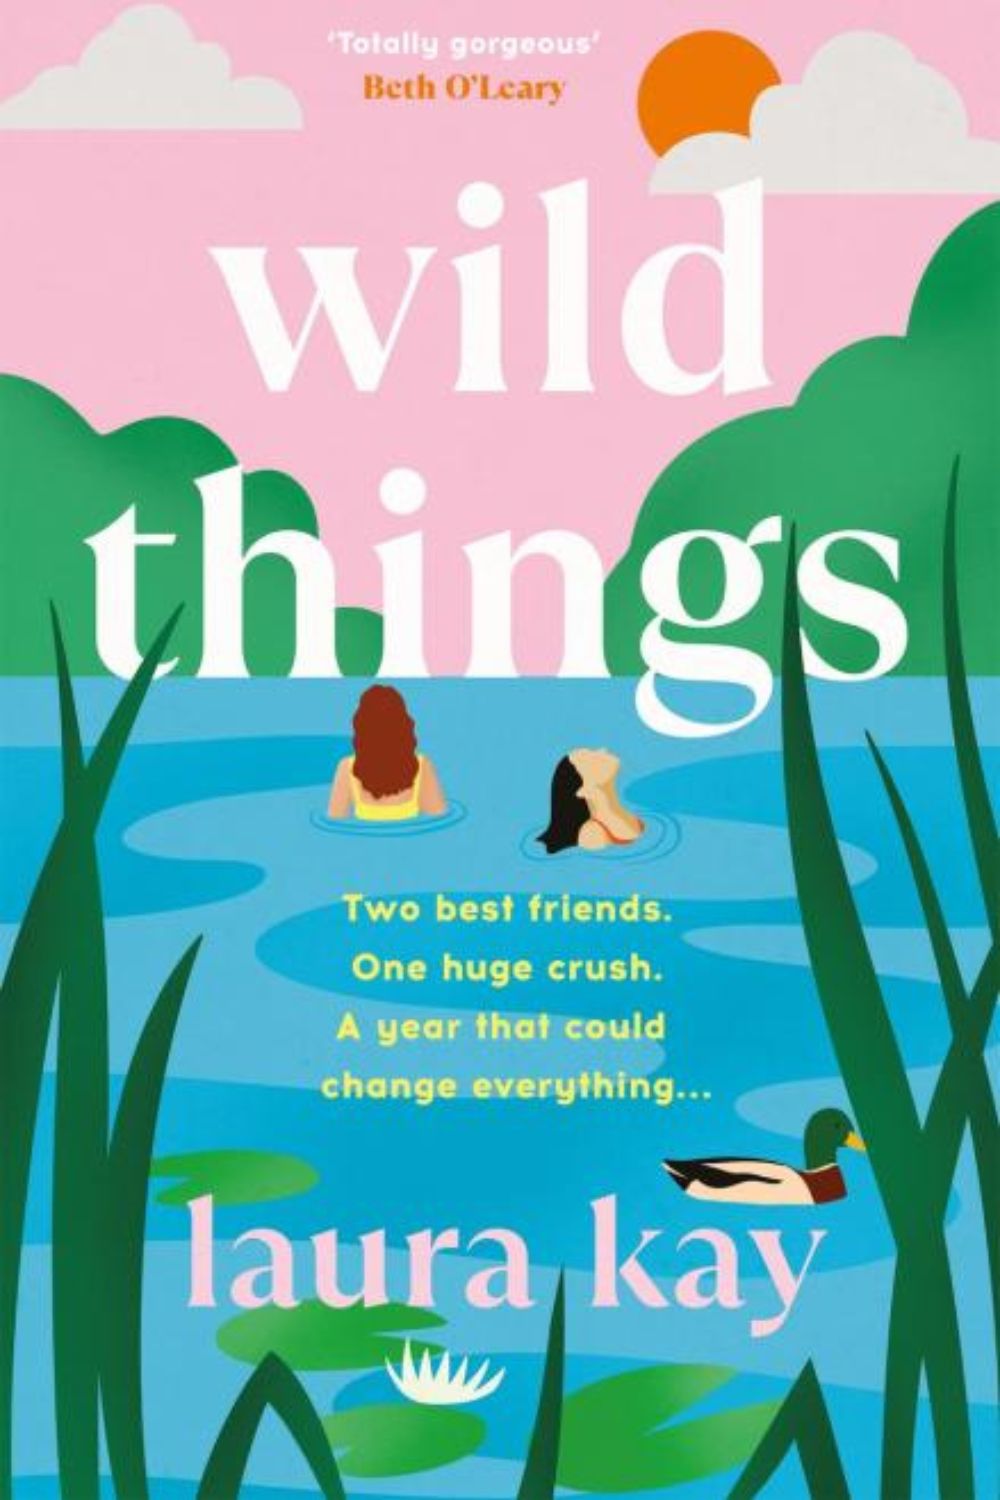 Wild Things, Laura Kay best books 2023